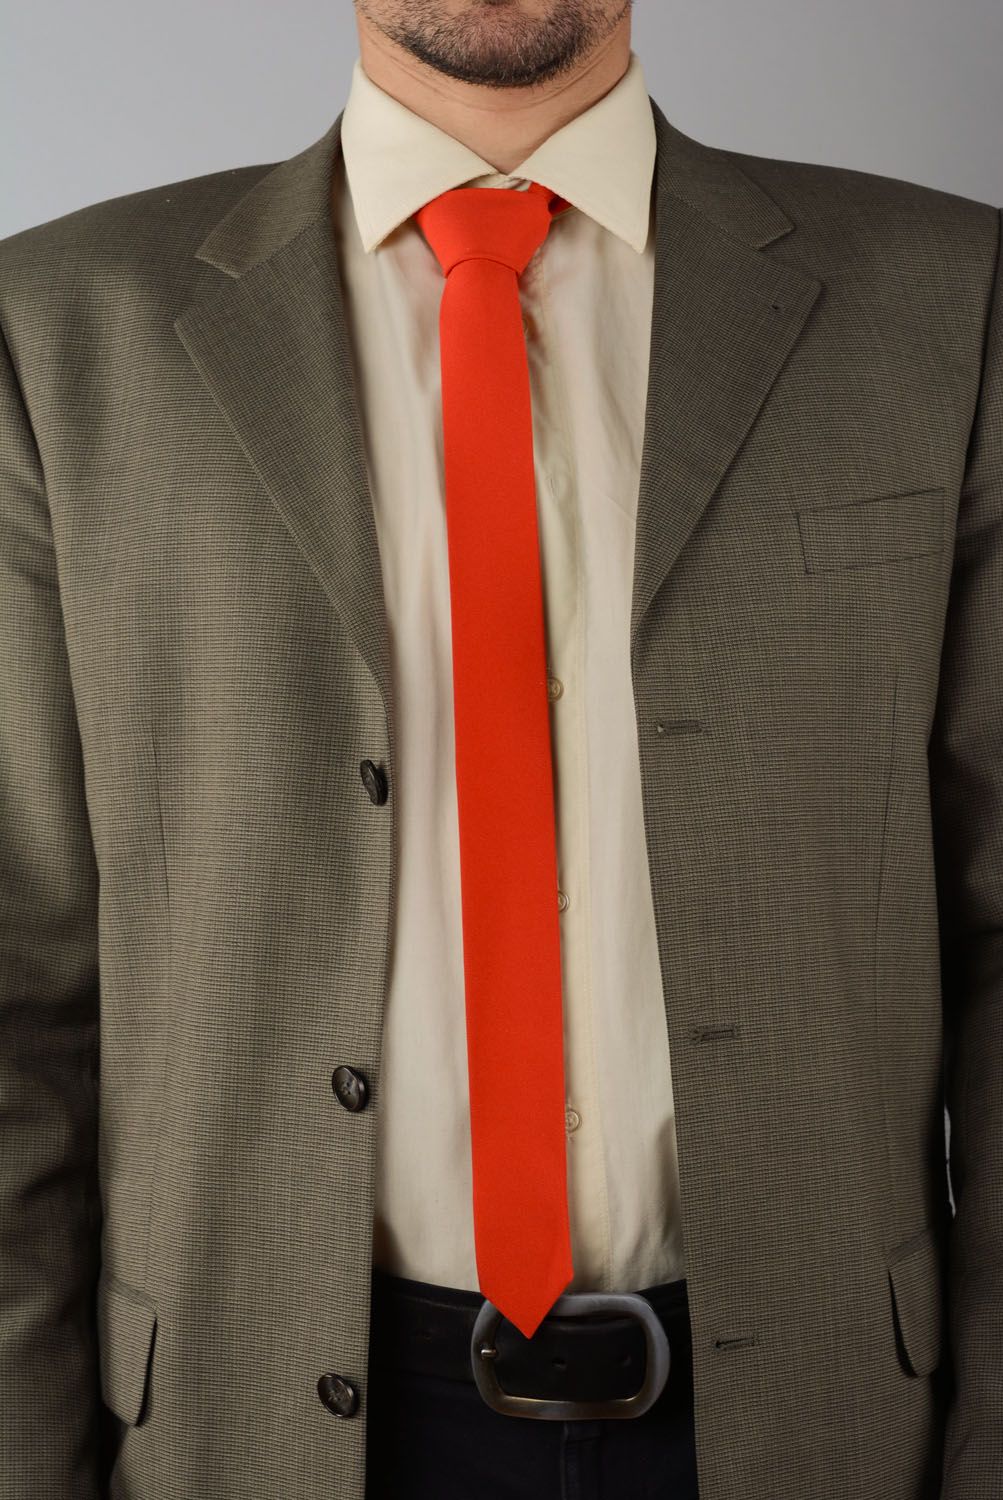 Cravate rouge en gabardine faite main photo 1